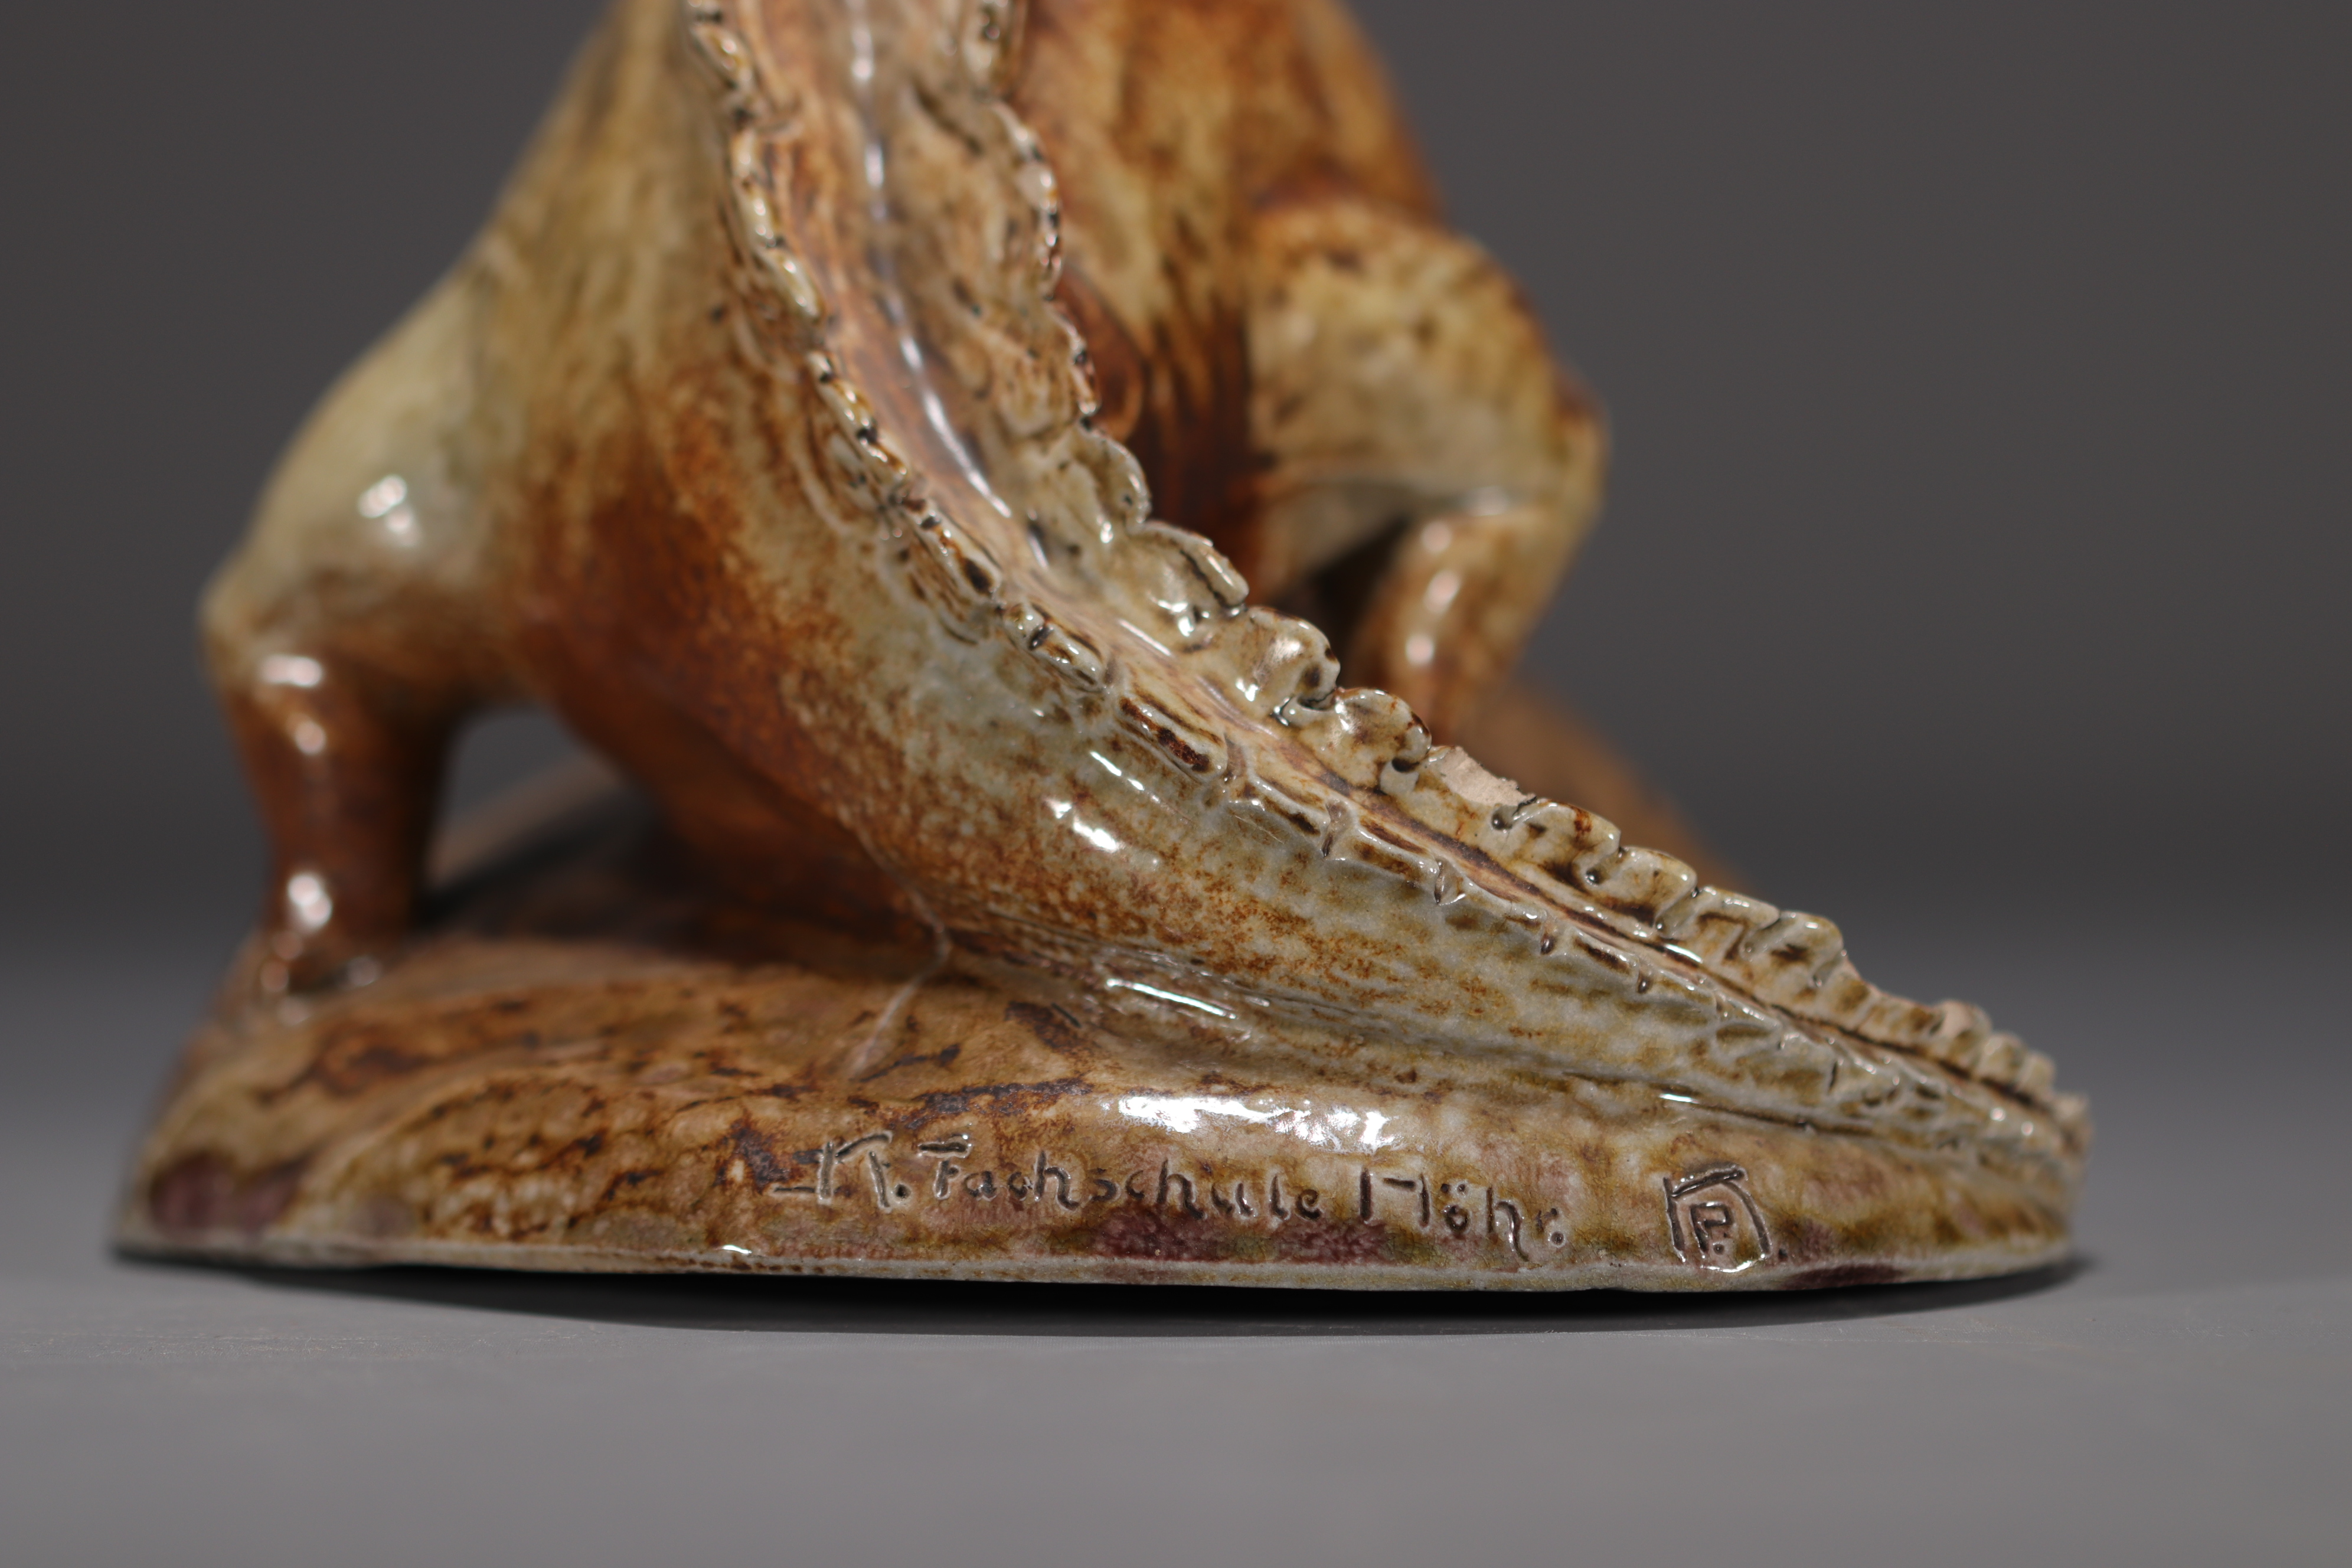 K. FACHSCHULE "Dinosaur" Sculpture in glazed stoneware. - Image 6 of 6